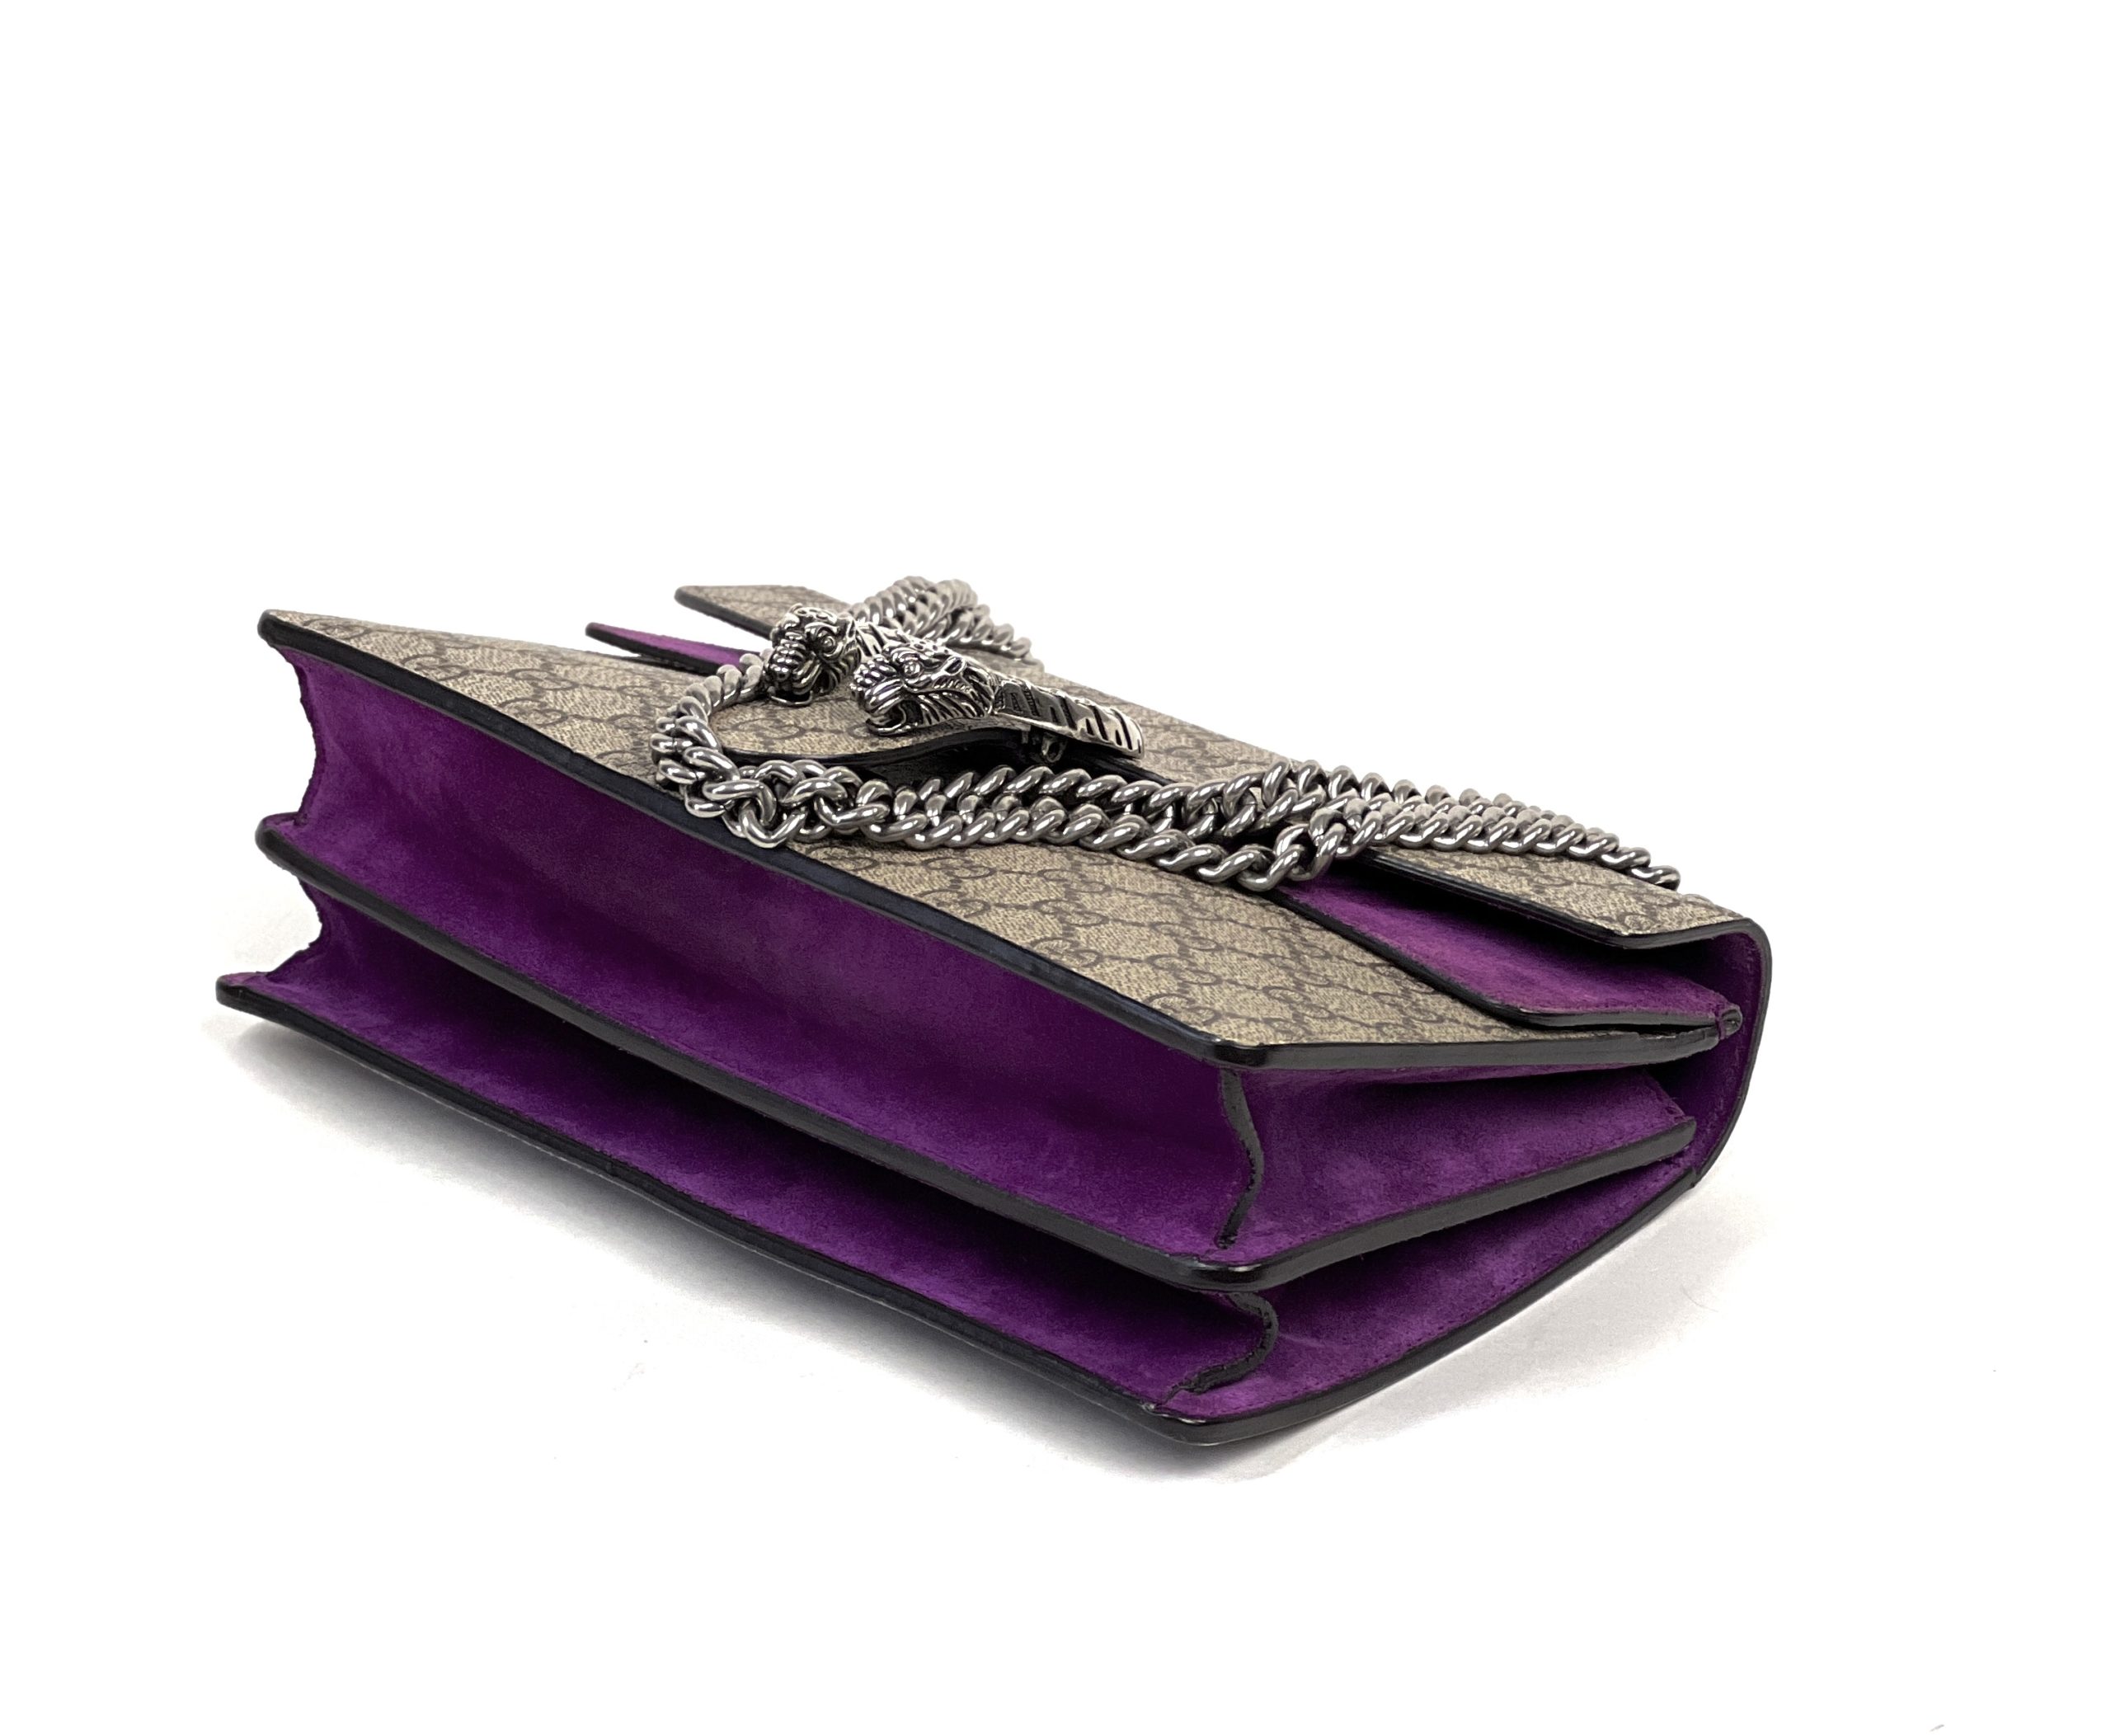 Gucci Purple Shoulder Bags